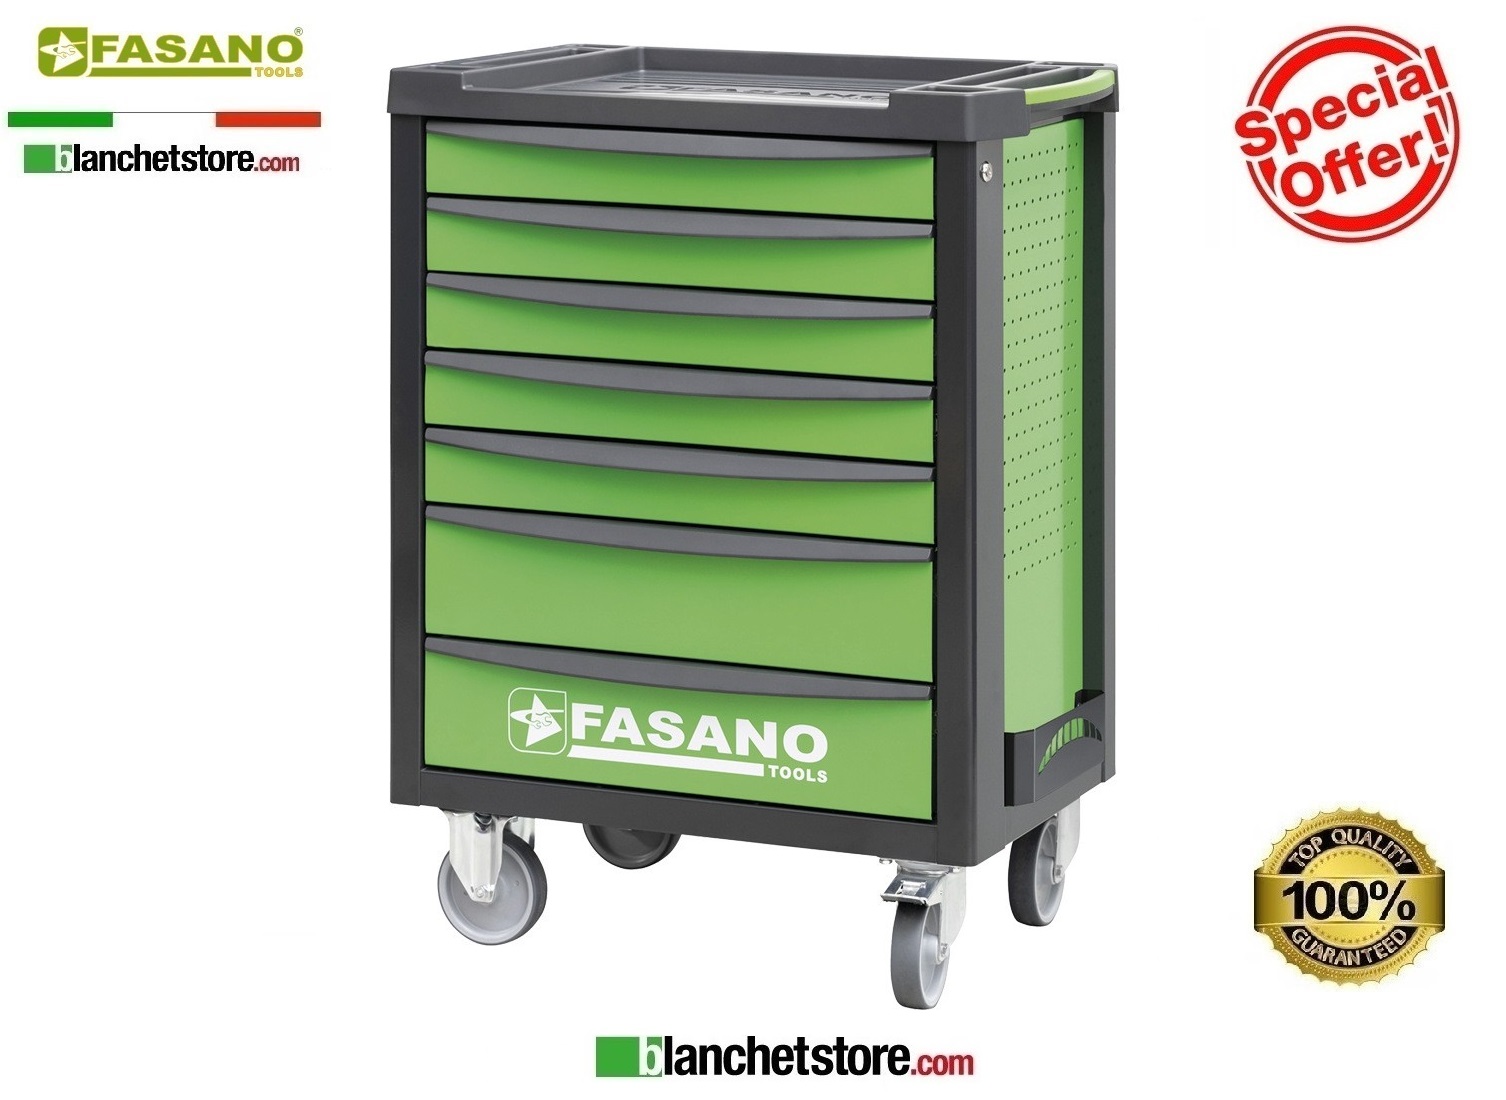 Tool trolley Fasano tools FG 100V/7T 7 drawers